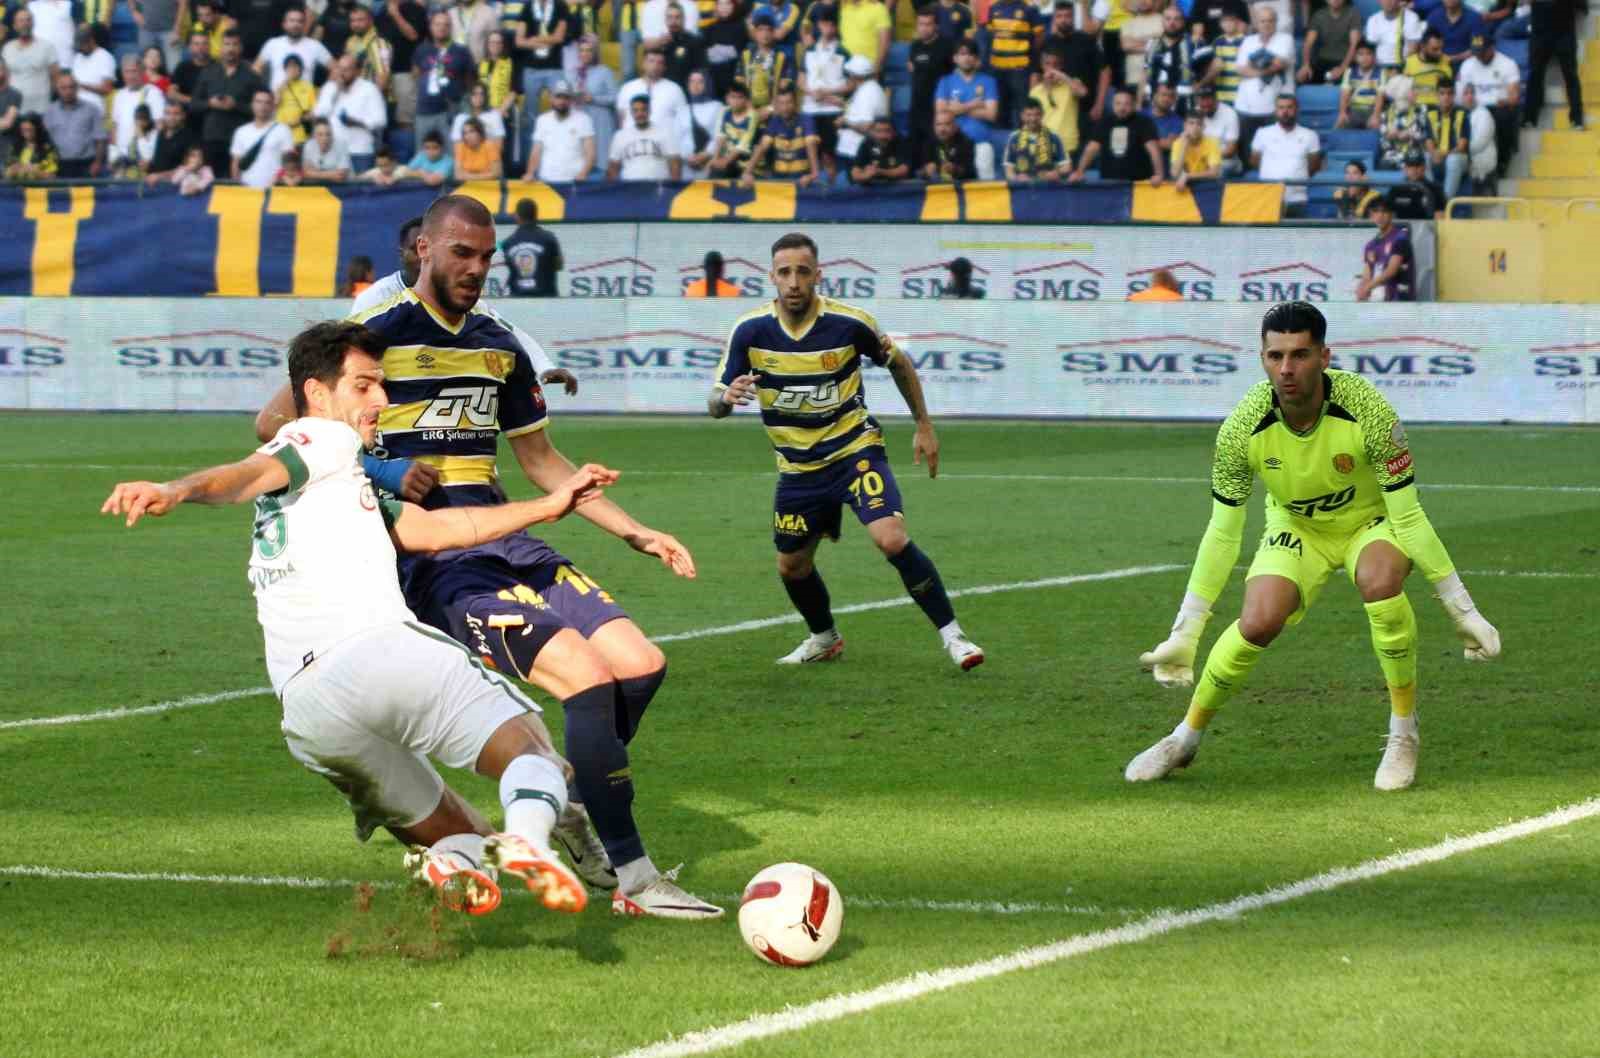 İlk yarı sonucu:  MKE Ankaragücü: 1 - TÜMOSAN Konyaspor: 1